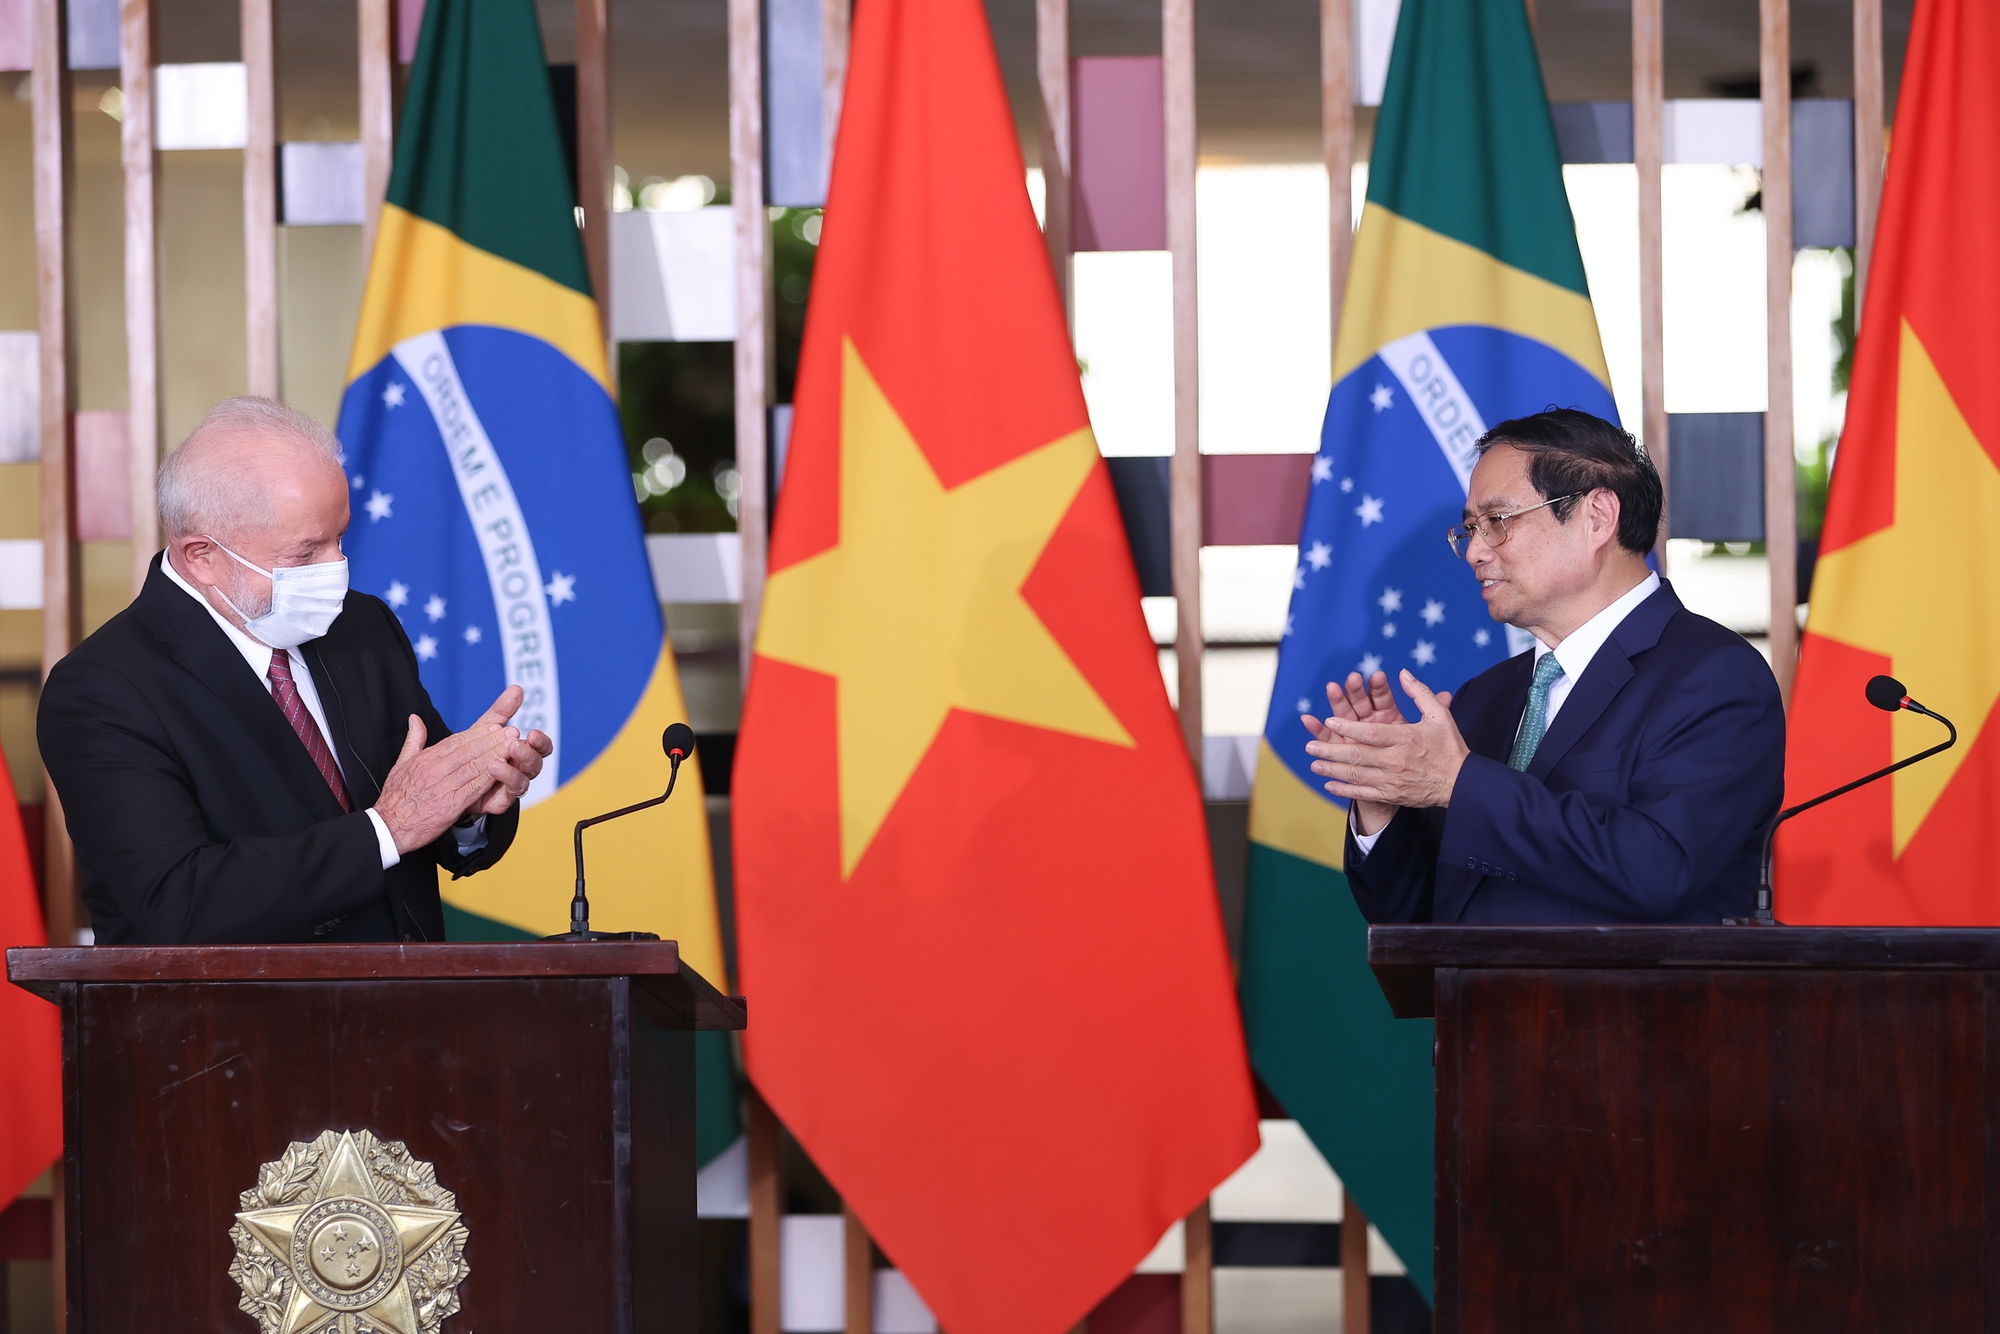 Ngay sau hội đàm, Thủ tướng Phạm Minh Chính và Tổng thống Brazil Luiz Inacio Lula da Silva đã có cuộc gặp gỡ, trao đổi với báo chí - Ảnh: VGP/Nhật Bắc